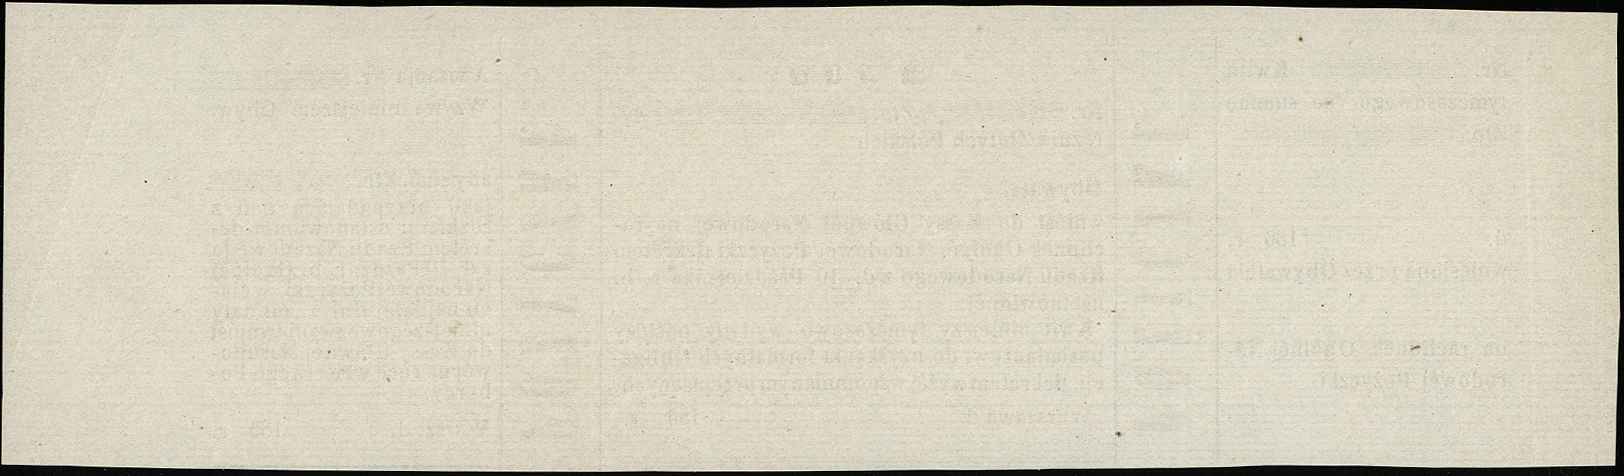 kwit tymczasowy Pożyczki Ogólnej Narodowej Polskiej z 1863 roku, Moczydłowski S21, Lucow 221 (R5) - ale nie notuje bez pieczęci, niewypełniony blankiet, bez pieczęci, pięknie zachowany